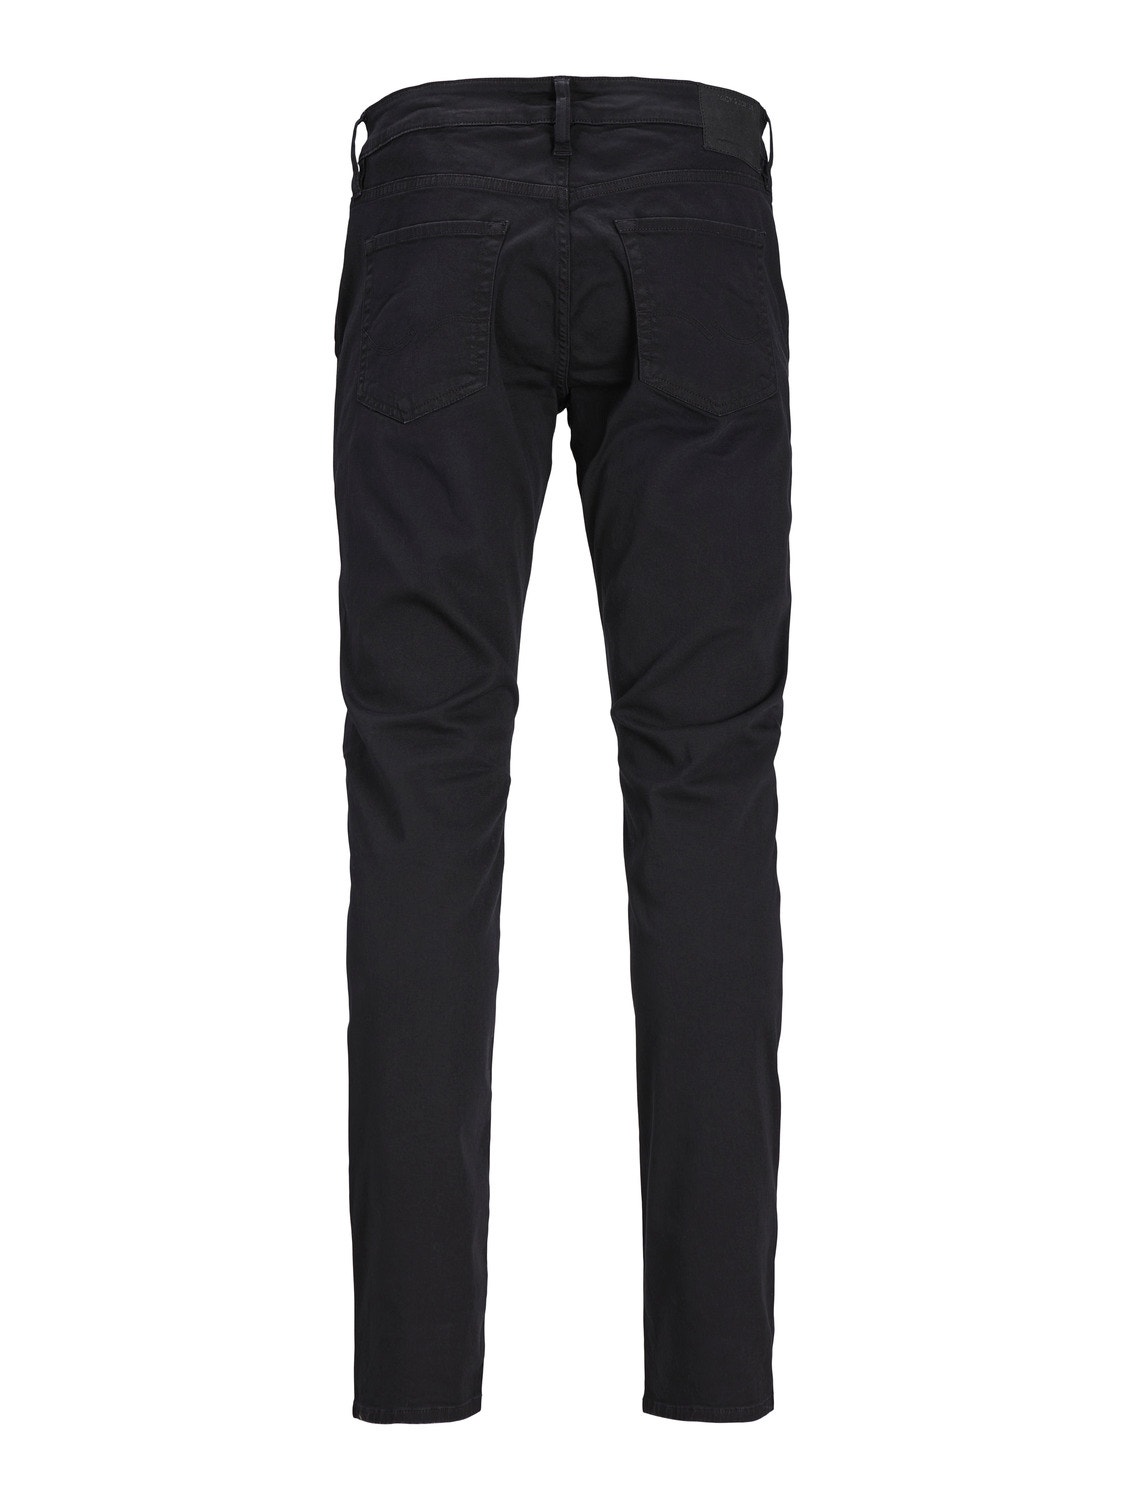 Jack & Jones Slim Fit Plátěné kalhoty Chino -Black - 12248680